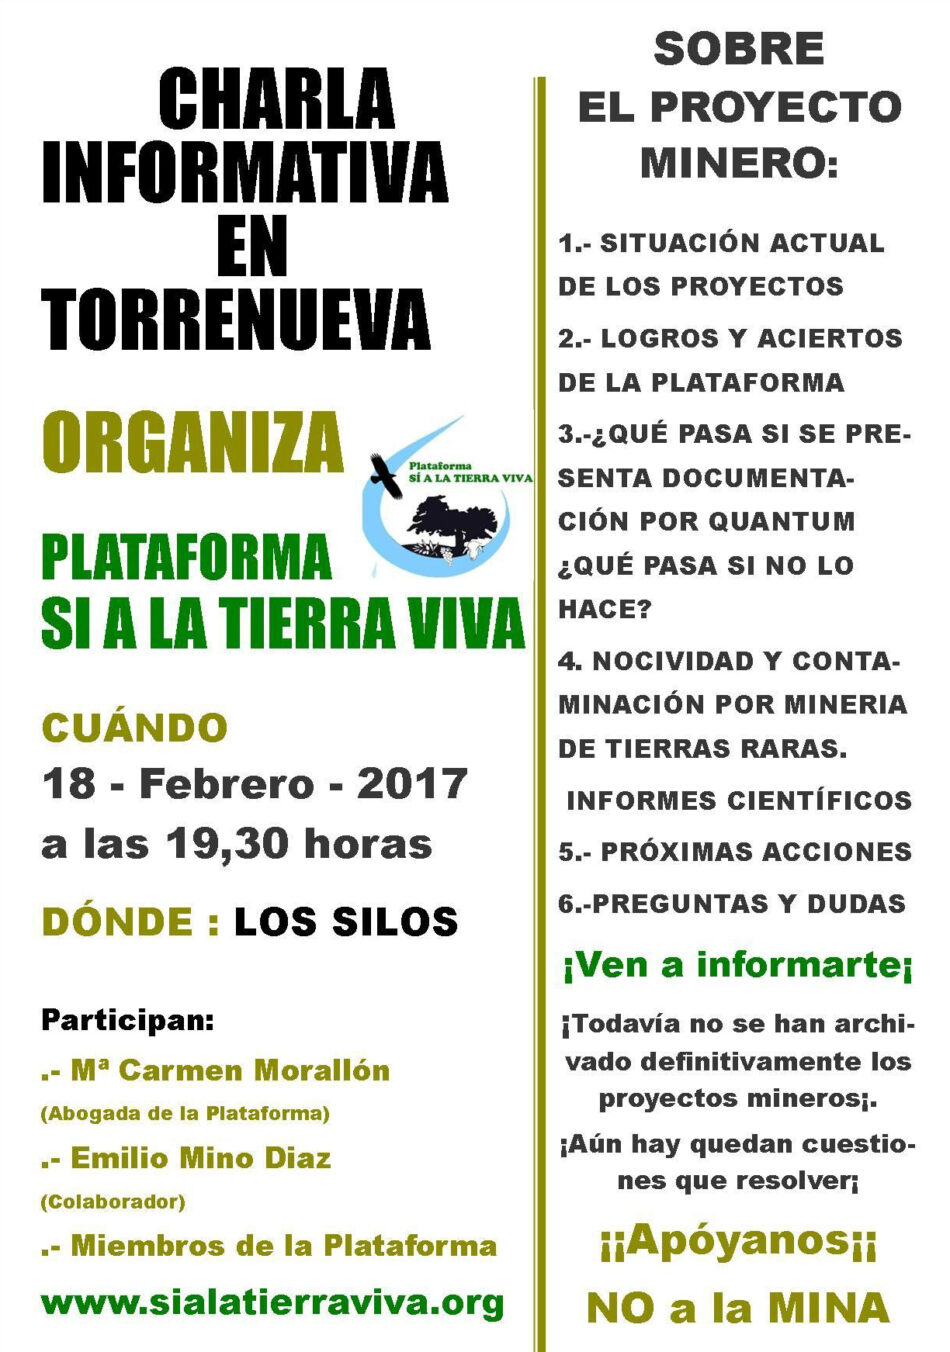 Sí a la Tierra Viva organiza este sábado en Torrenueva una nueva charla informativa sobre los proyectos de minería de tierras raras